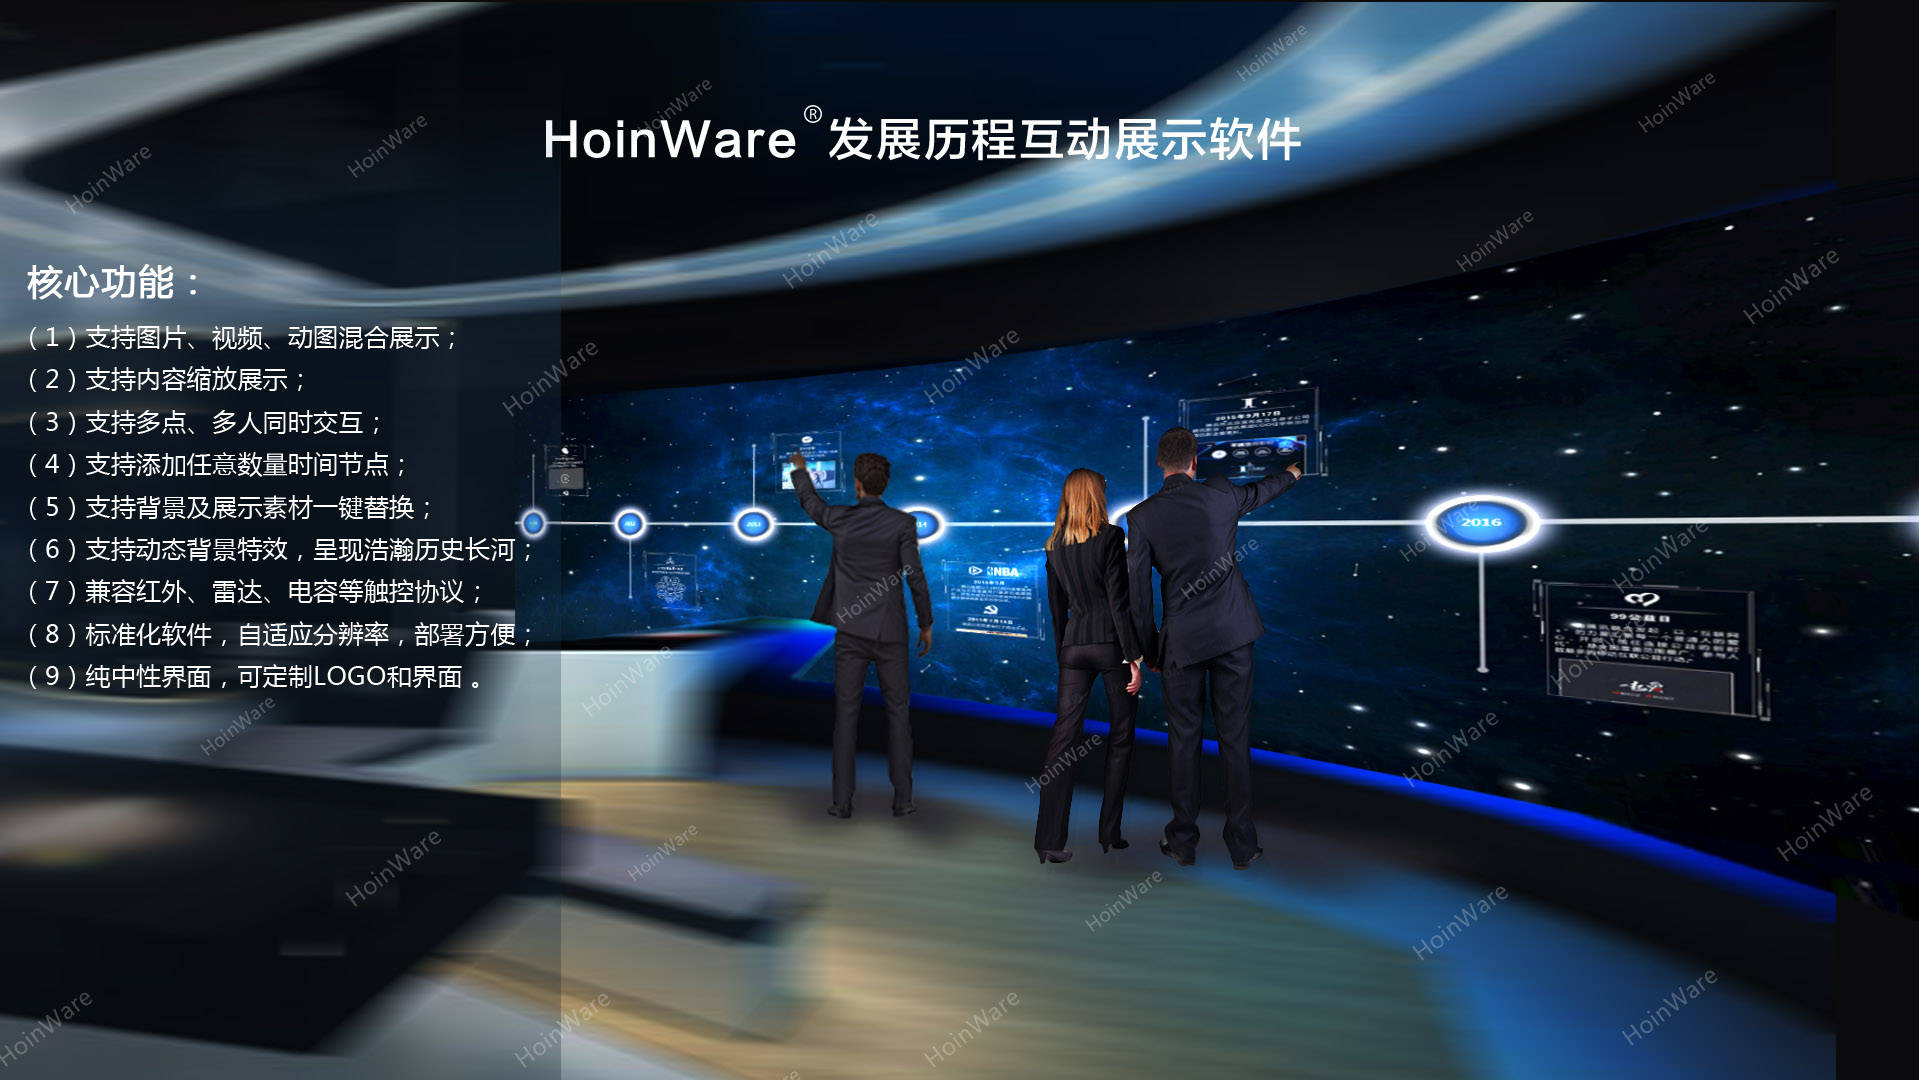 互动|HoinWare发展历程互动展示软件，以时间为顺序沿着一根横轴排列展示多媒体